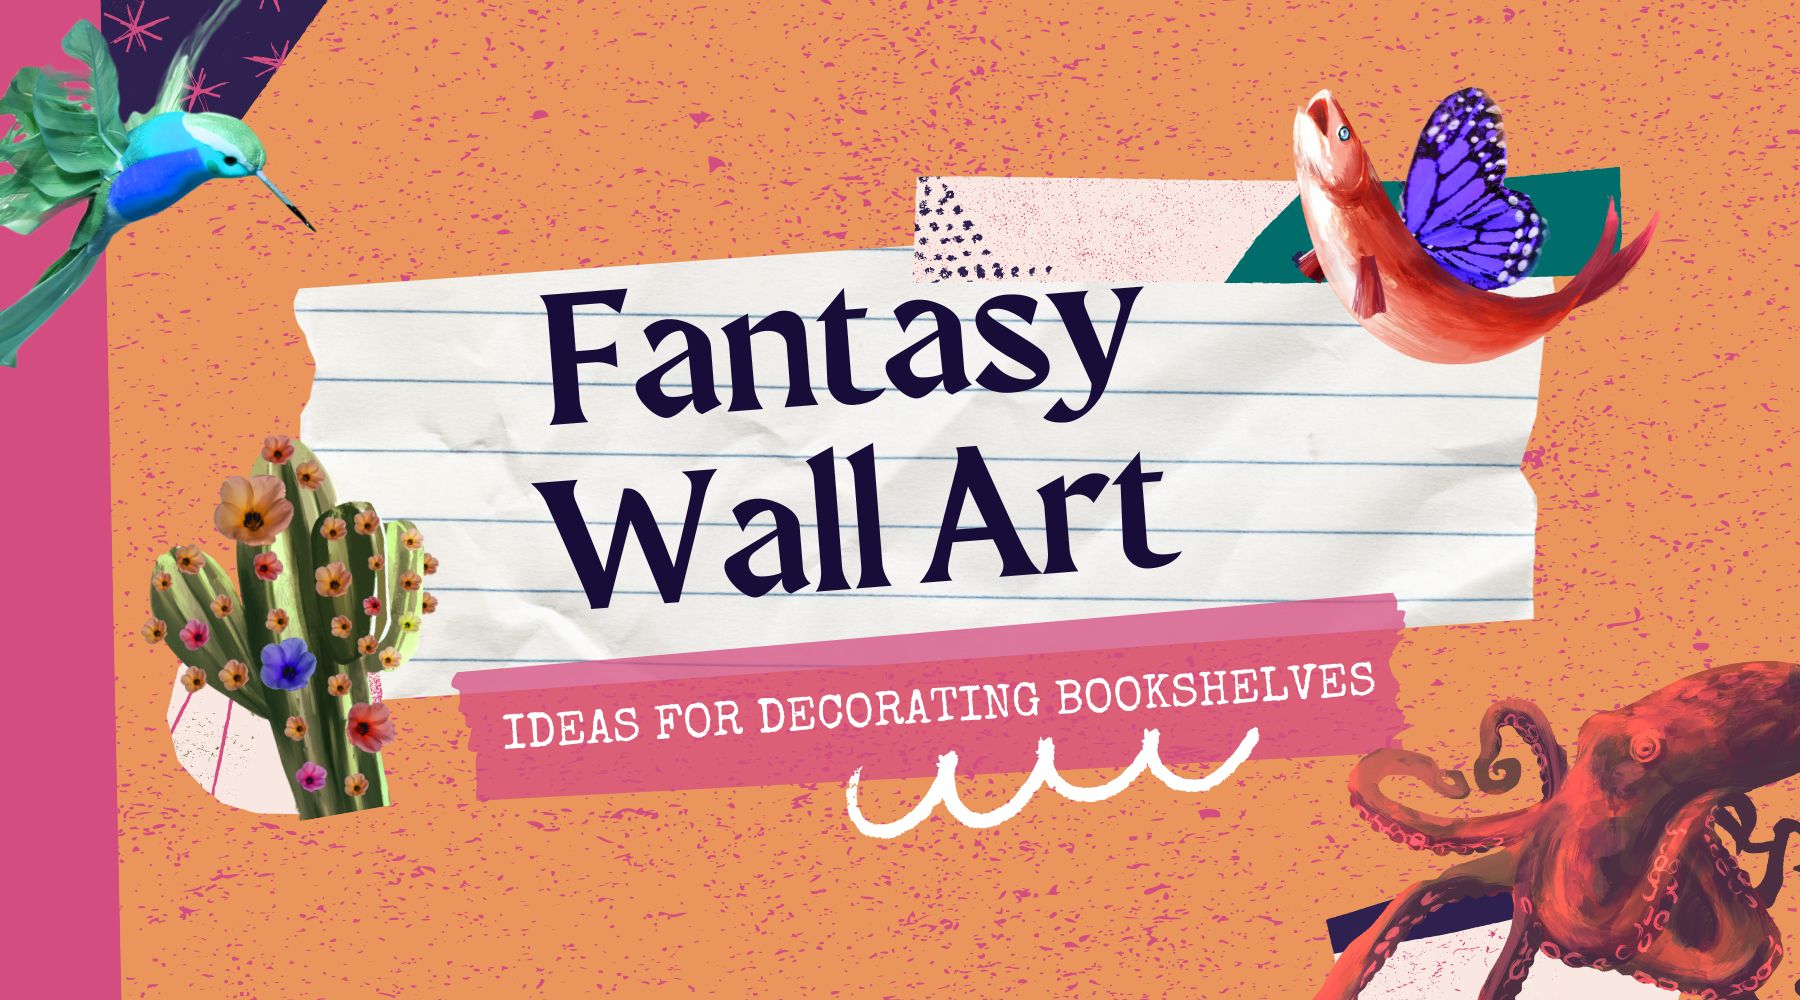 Fantasy Wall Art Ideas for Decorating Bookshelves - Bookshelf Memories